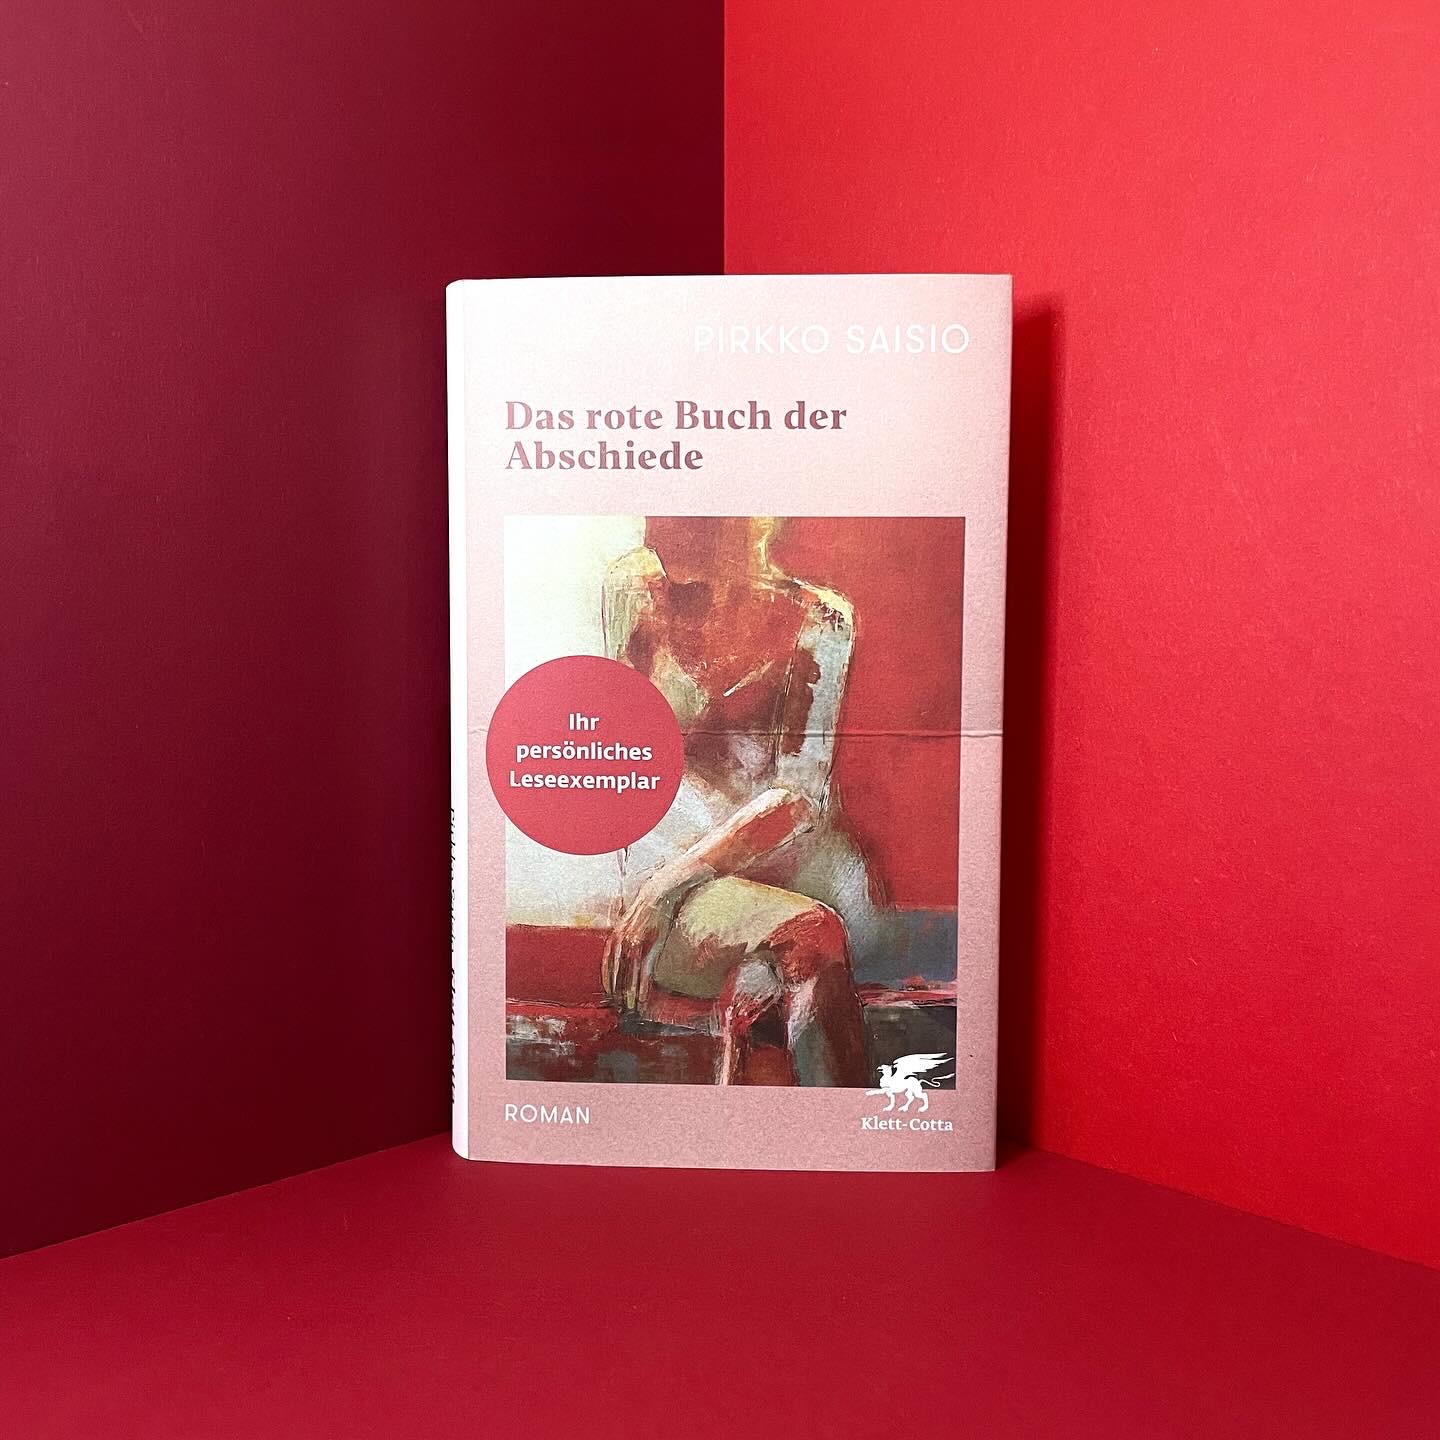 Das rote Buch der Abschiede von Pirkko Saisio